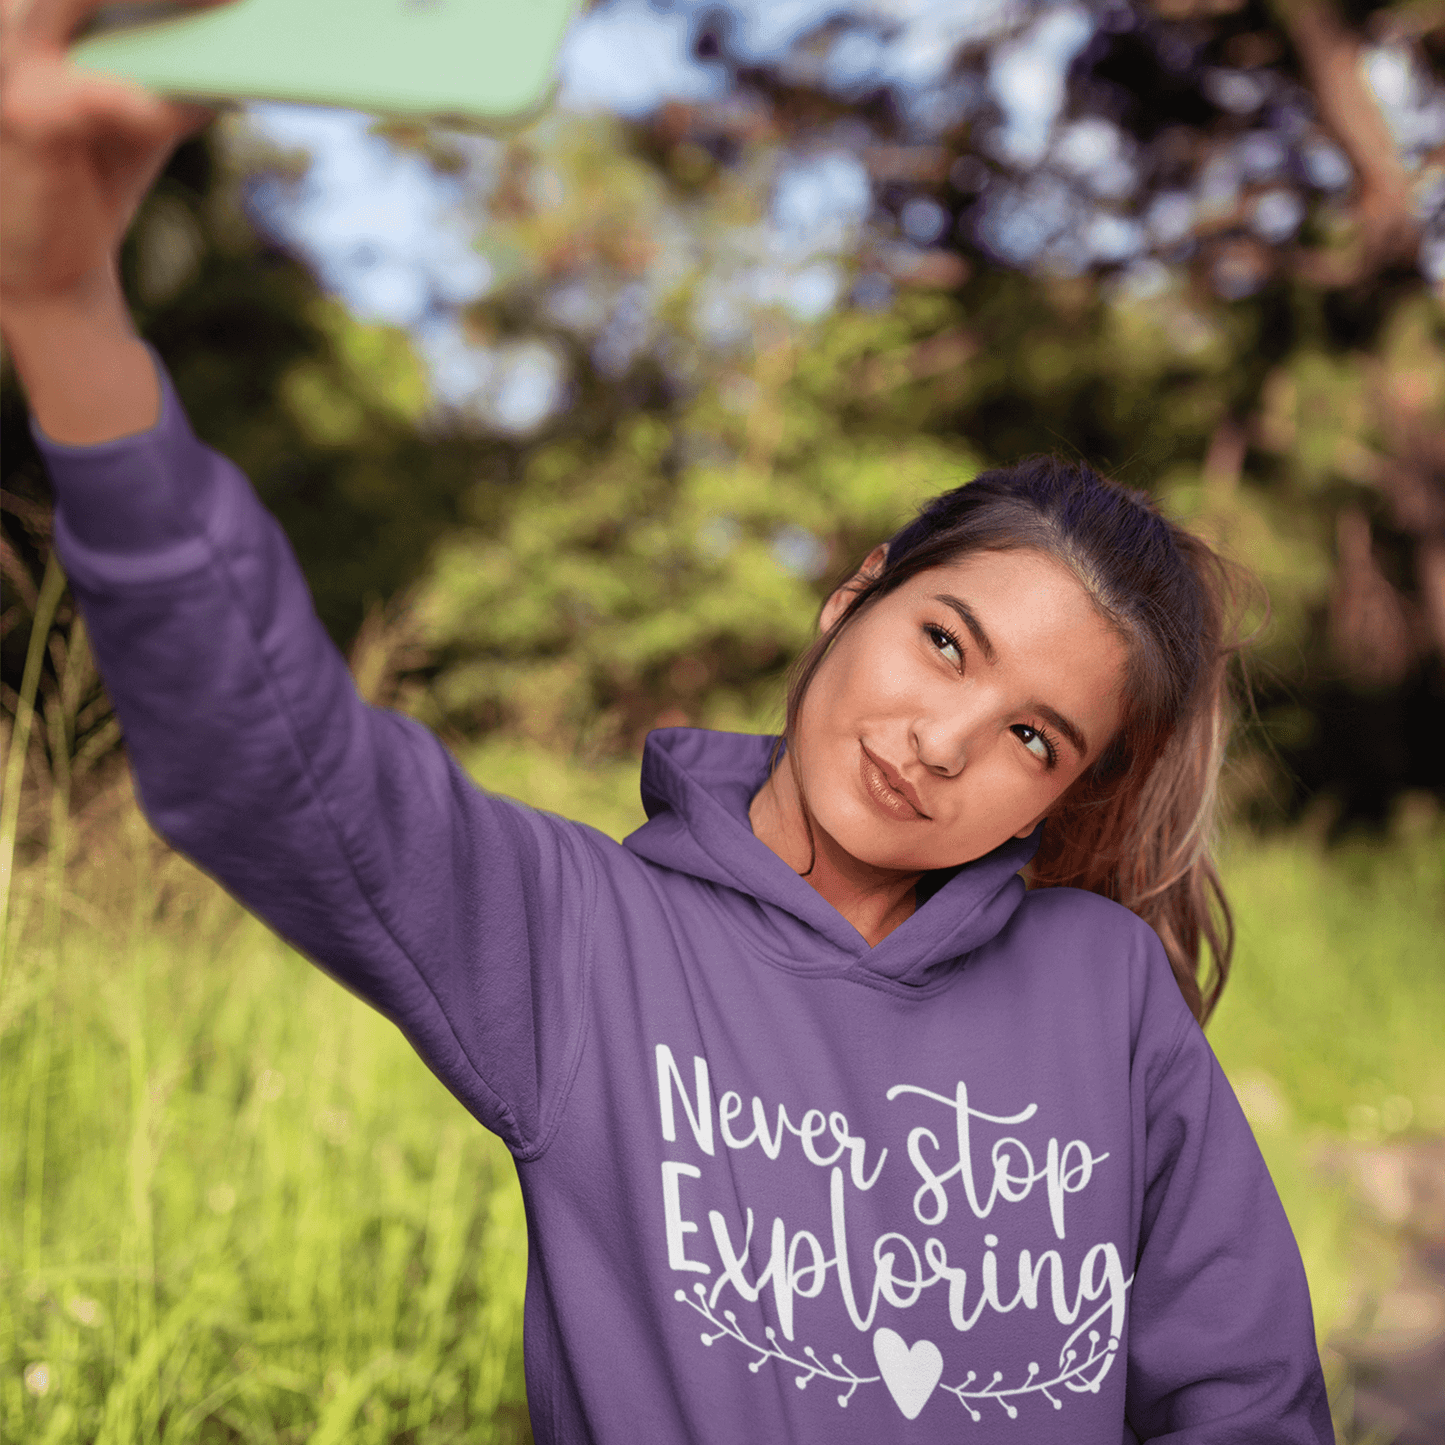 Never Stop Exploring Women's Hoodie Heavy Sweatshirt